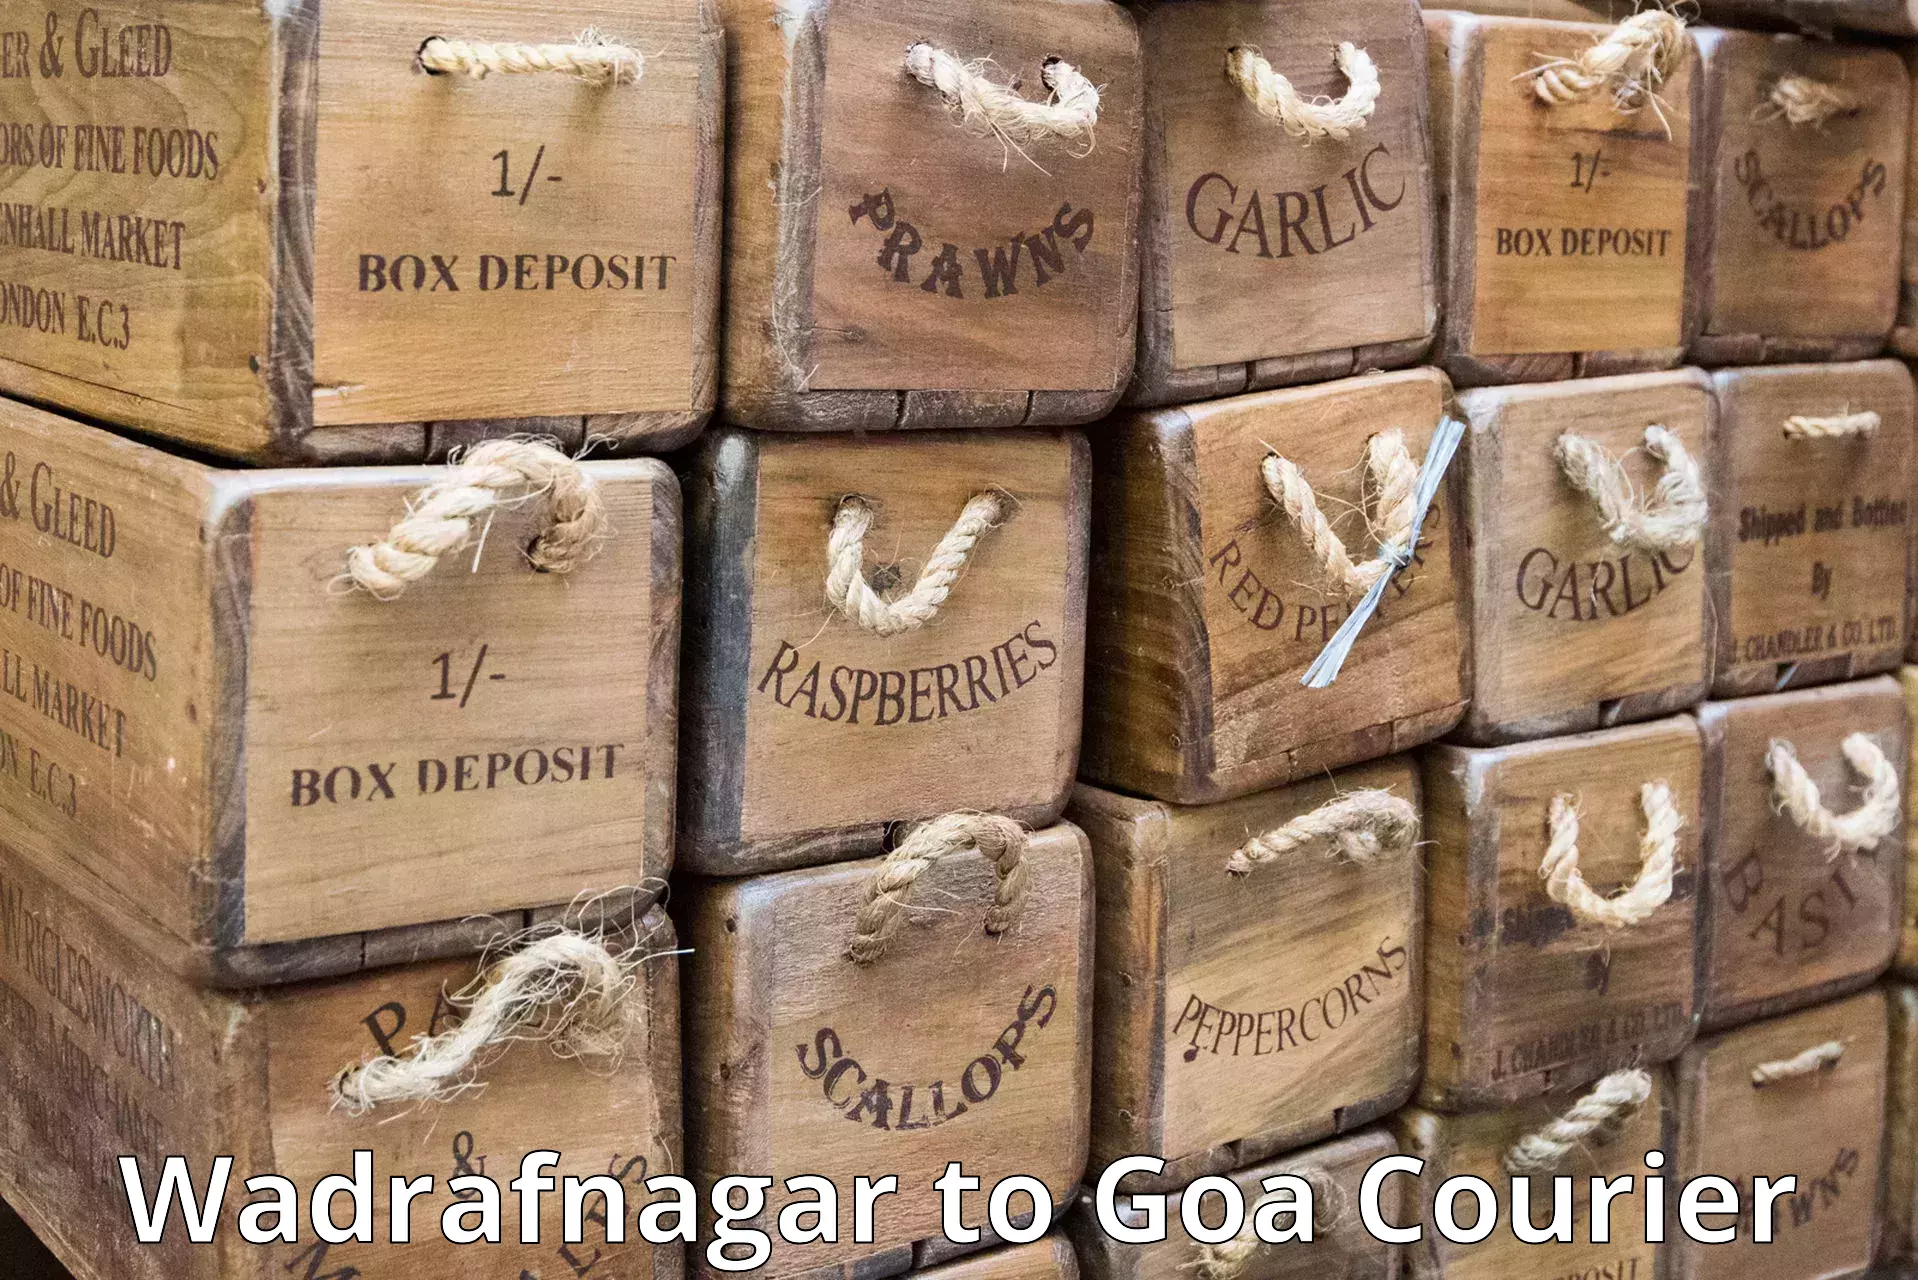 Scheduled delivery Wadrafnagar to Goa